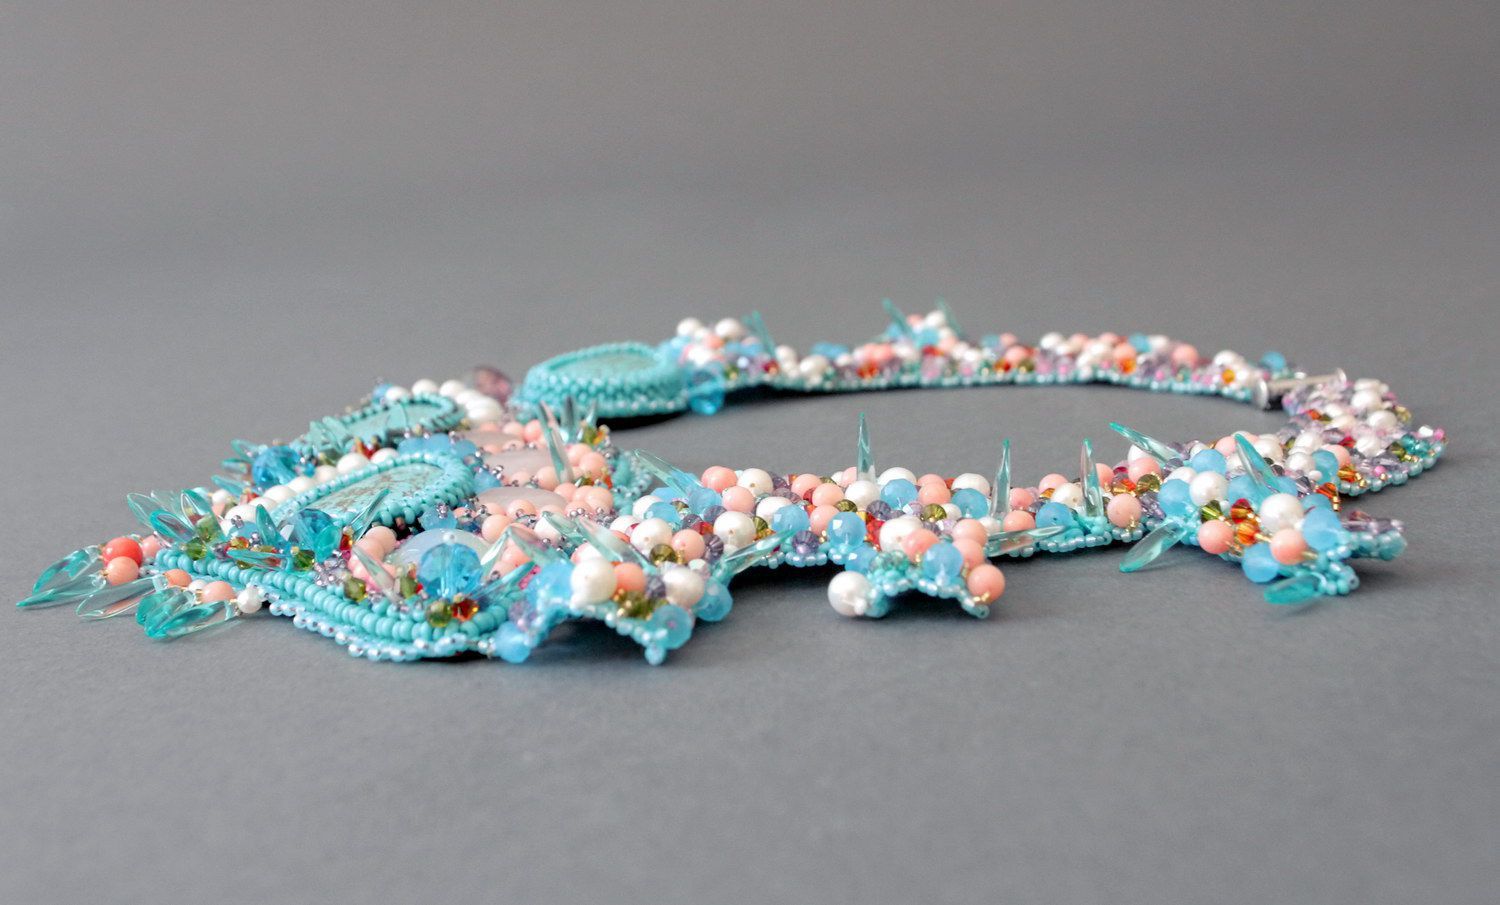 Collier fait main de perles, coraux, grains de verre et cristaux 'Toucher doux' photo 1